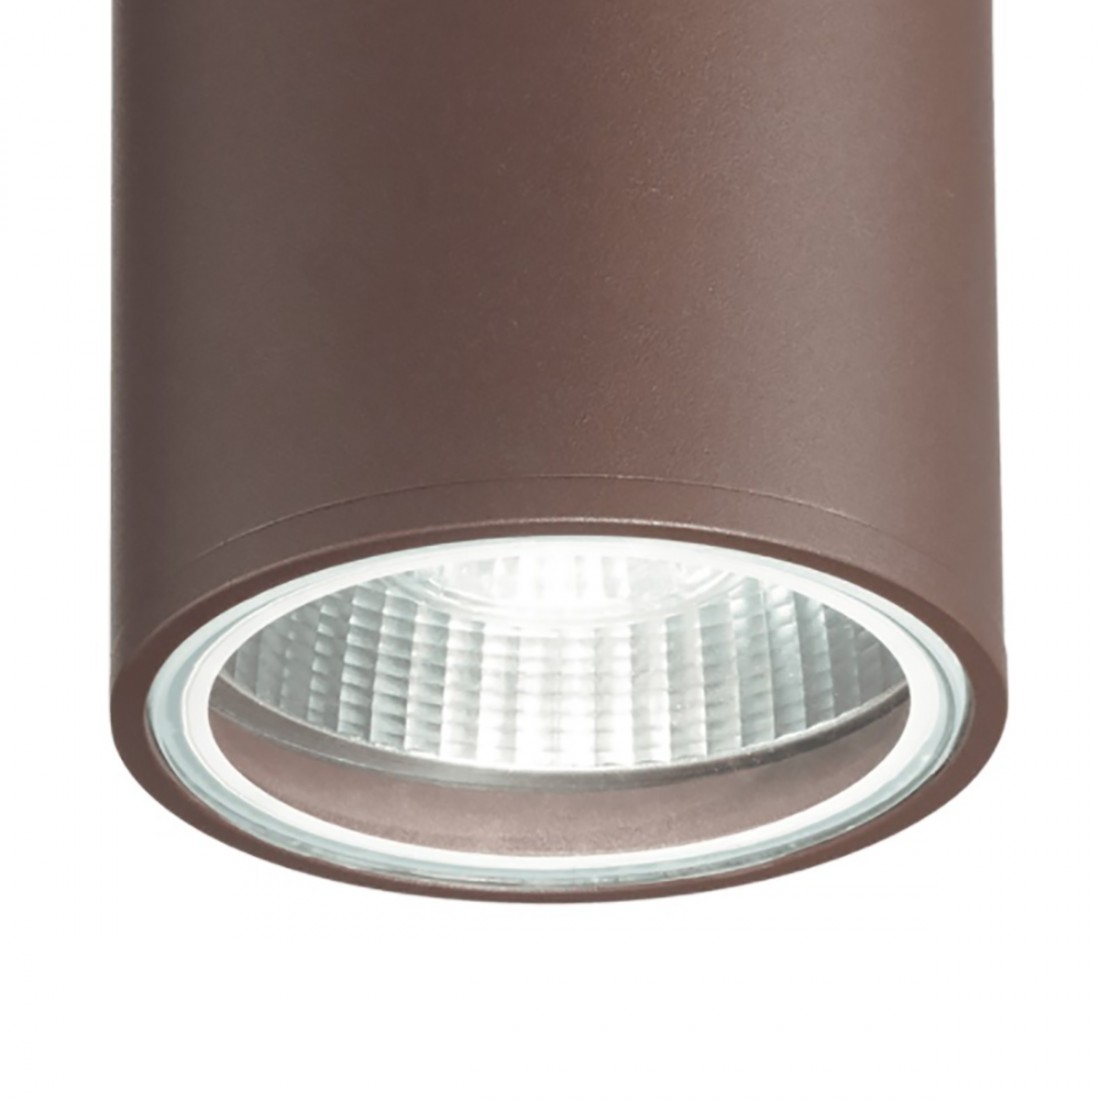 Cylindre extérieur en aluminium avec éclairage haut-bas, deux lumières, led GU10.